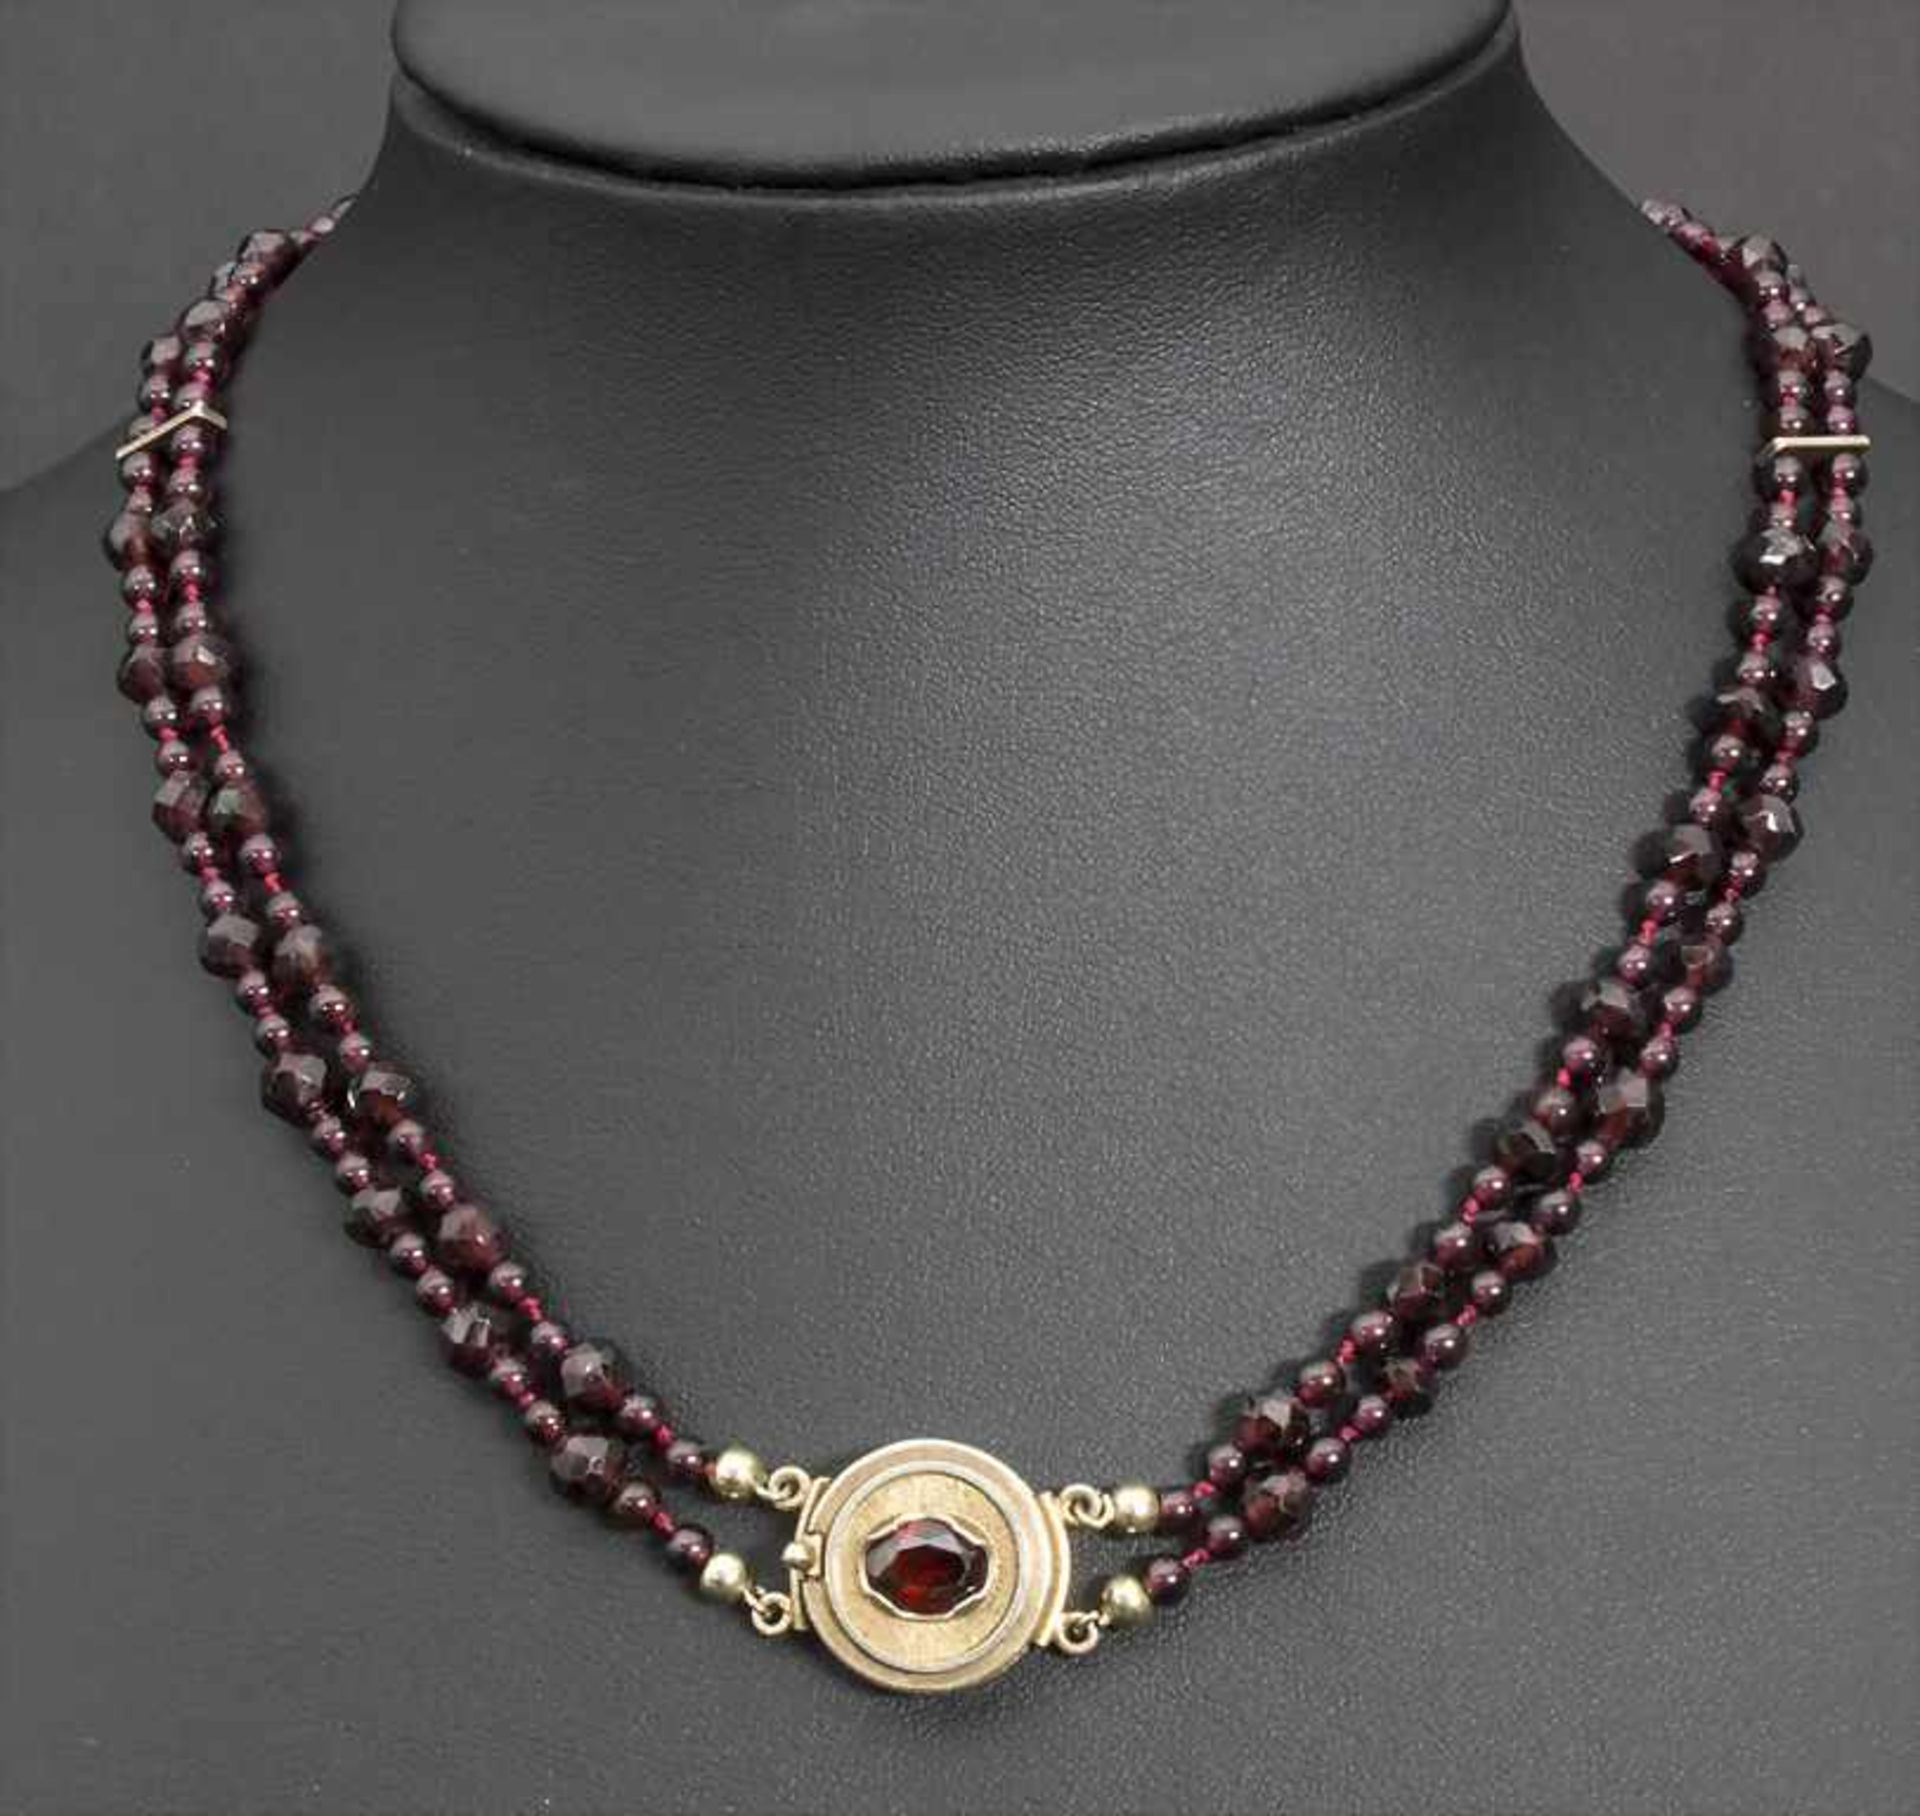 Granat-Collier / A garnet necklace - Bild 5 aus 6